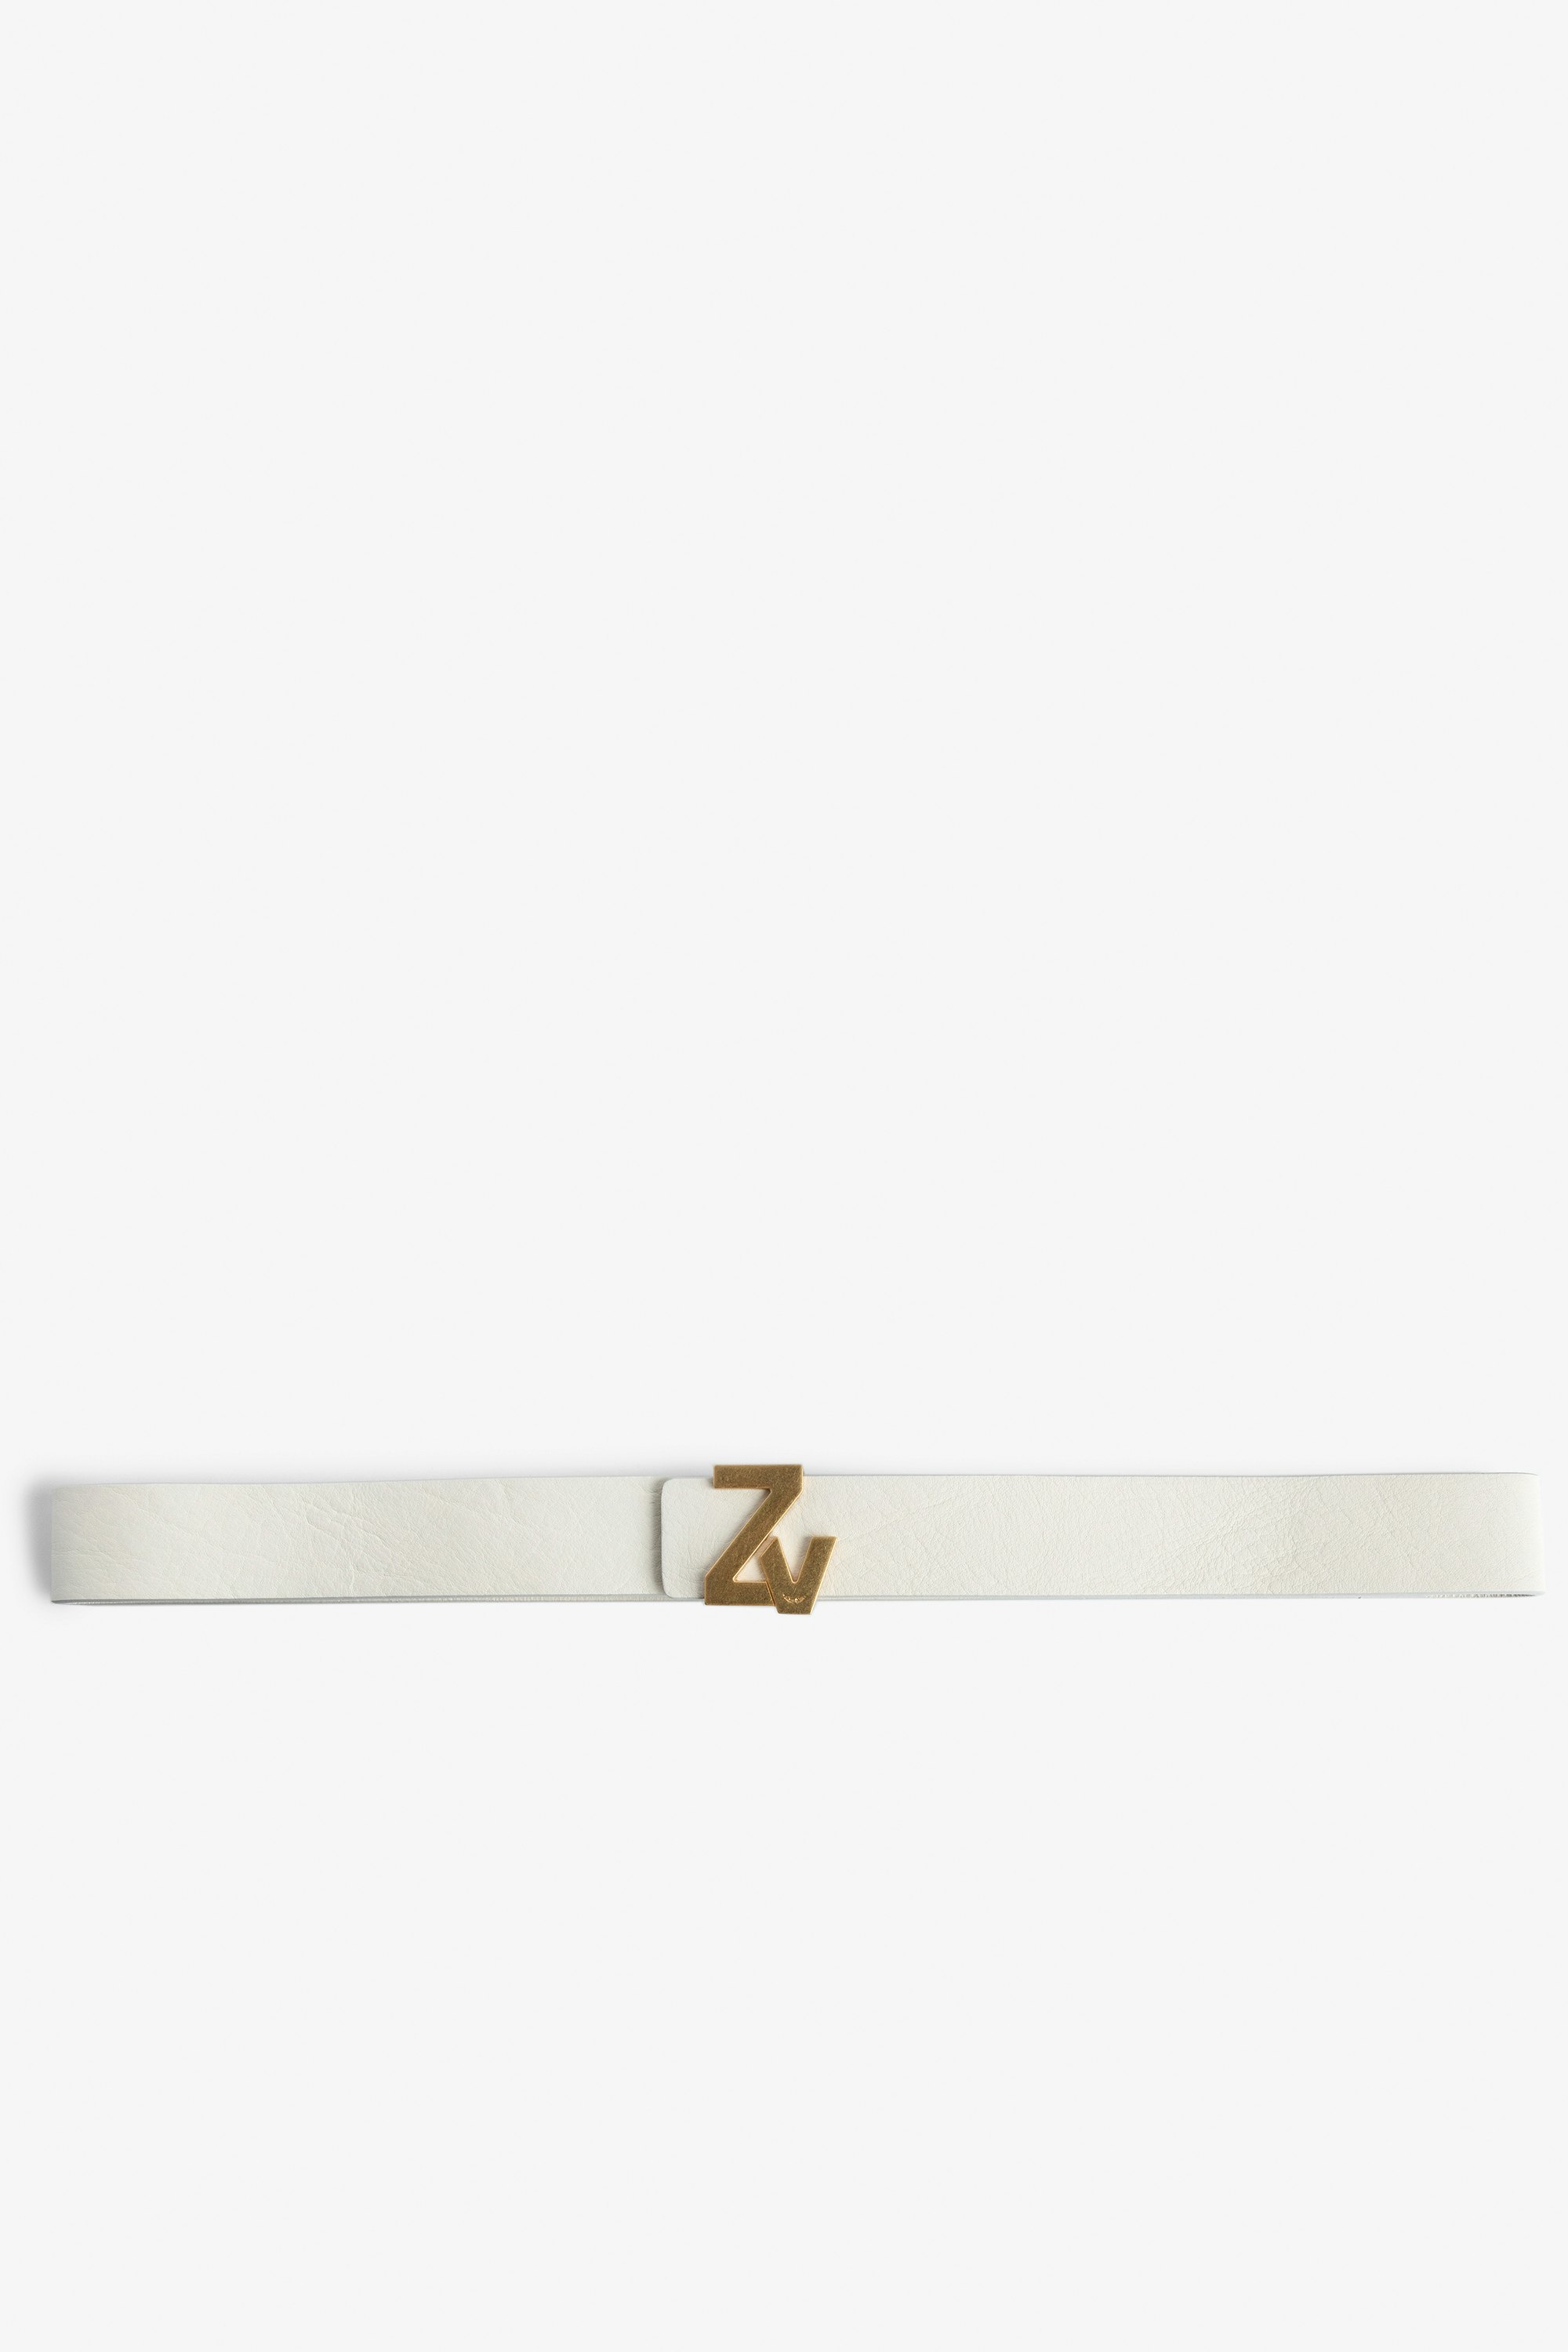 Cinturón ZV Initiale La Belt - Cinturón de color crudo de piel para mujer con hebilla ZV dorada.